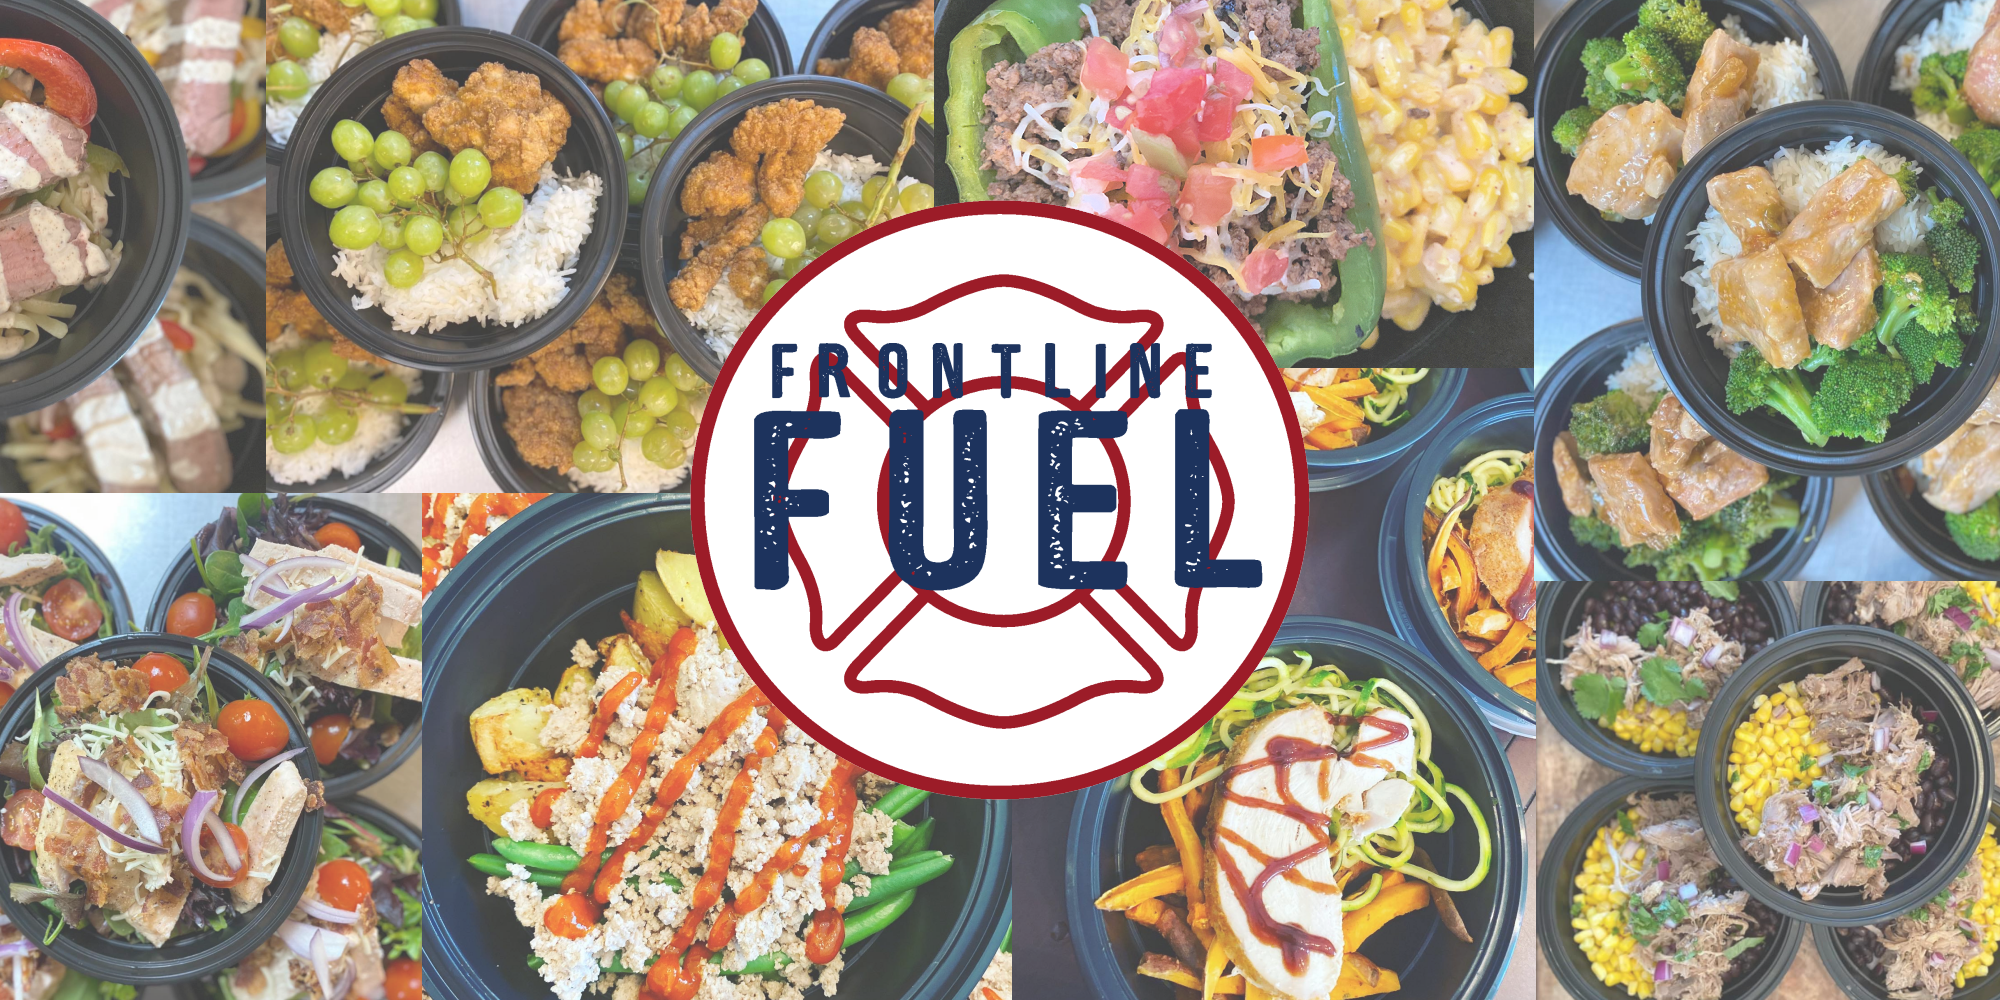 Frontline Fuel Meals in Delaware Prepared Meals 2021